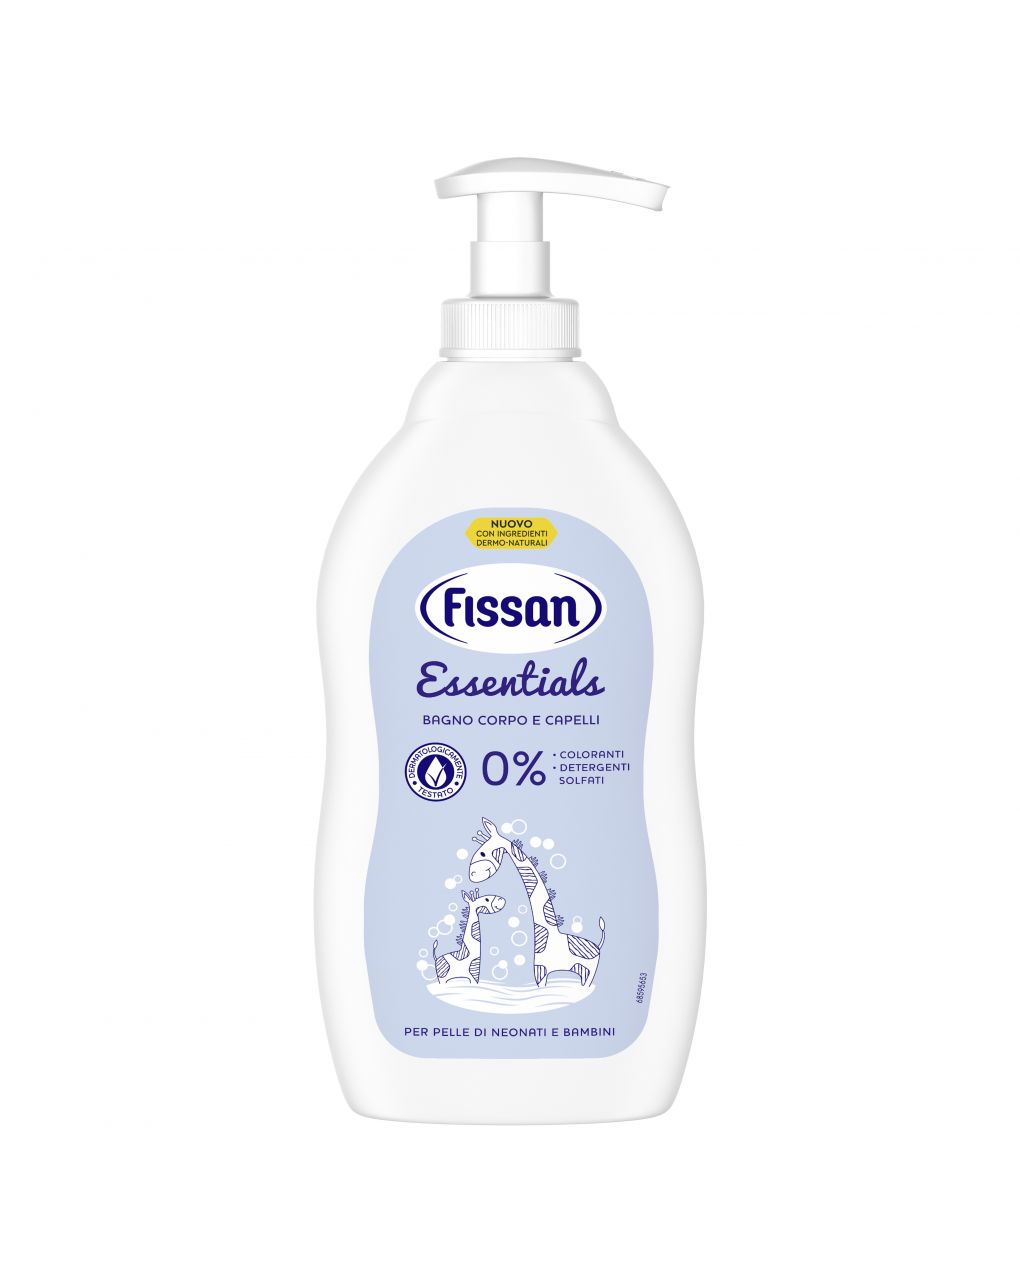 Bagno corpo e capelli essentials 400ml - Fissan